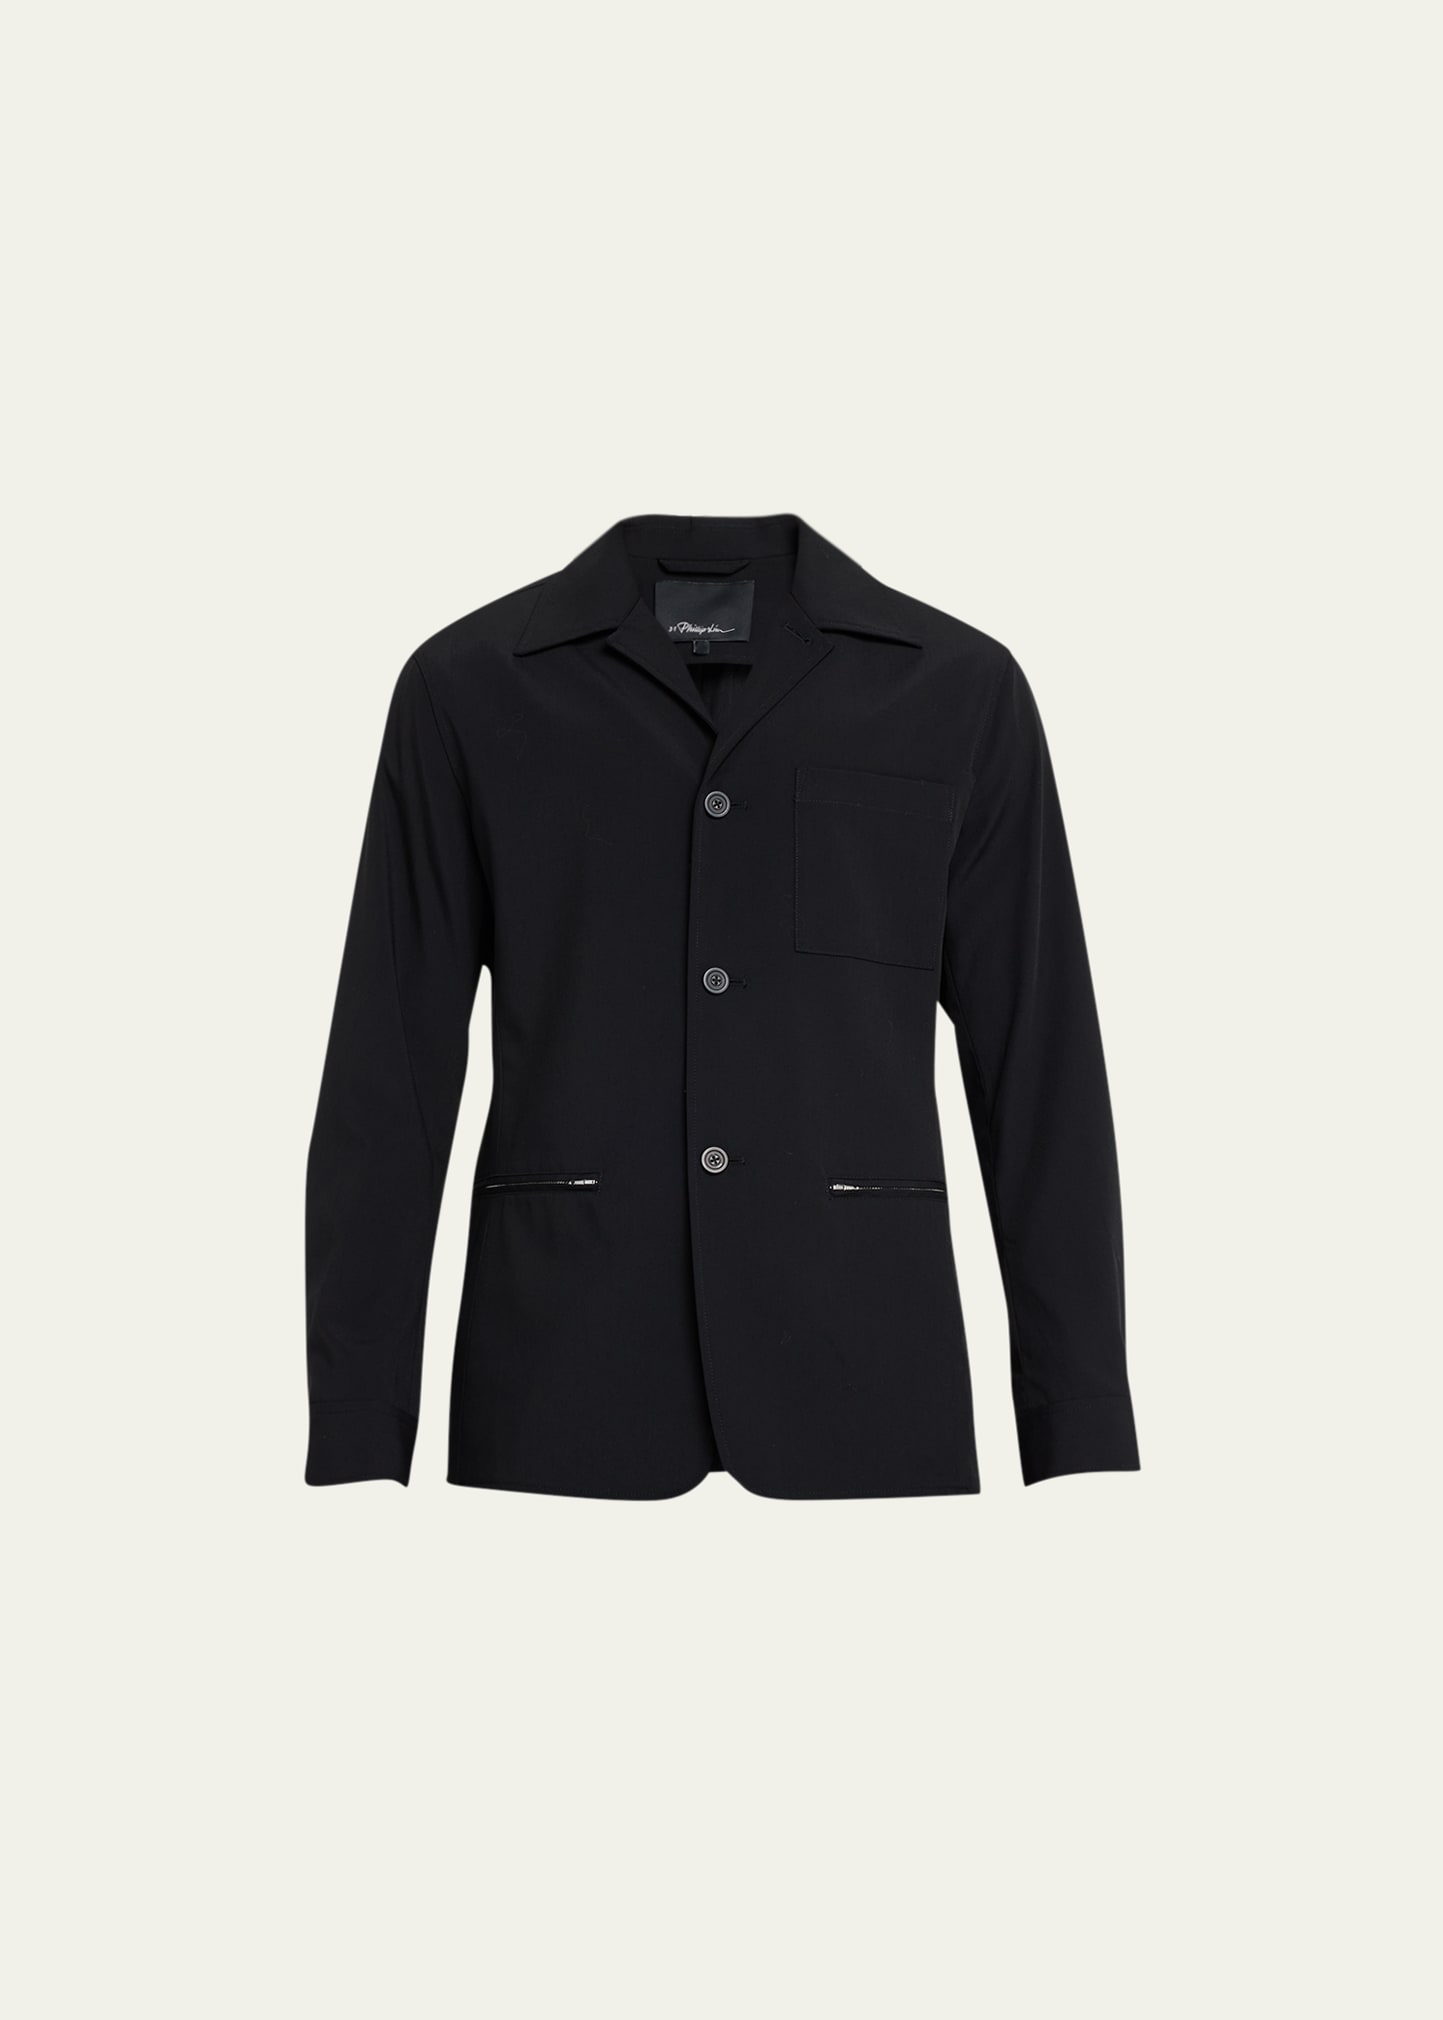 3.1 Phillip Lim / フィリップ リム Men's Zip-pocket Work Jacket In Black